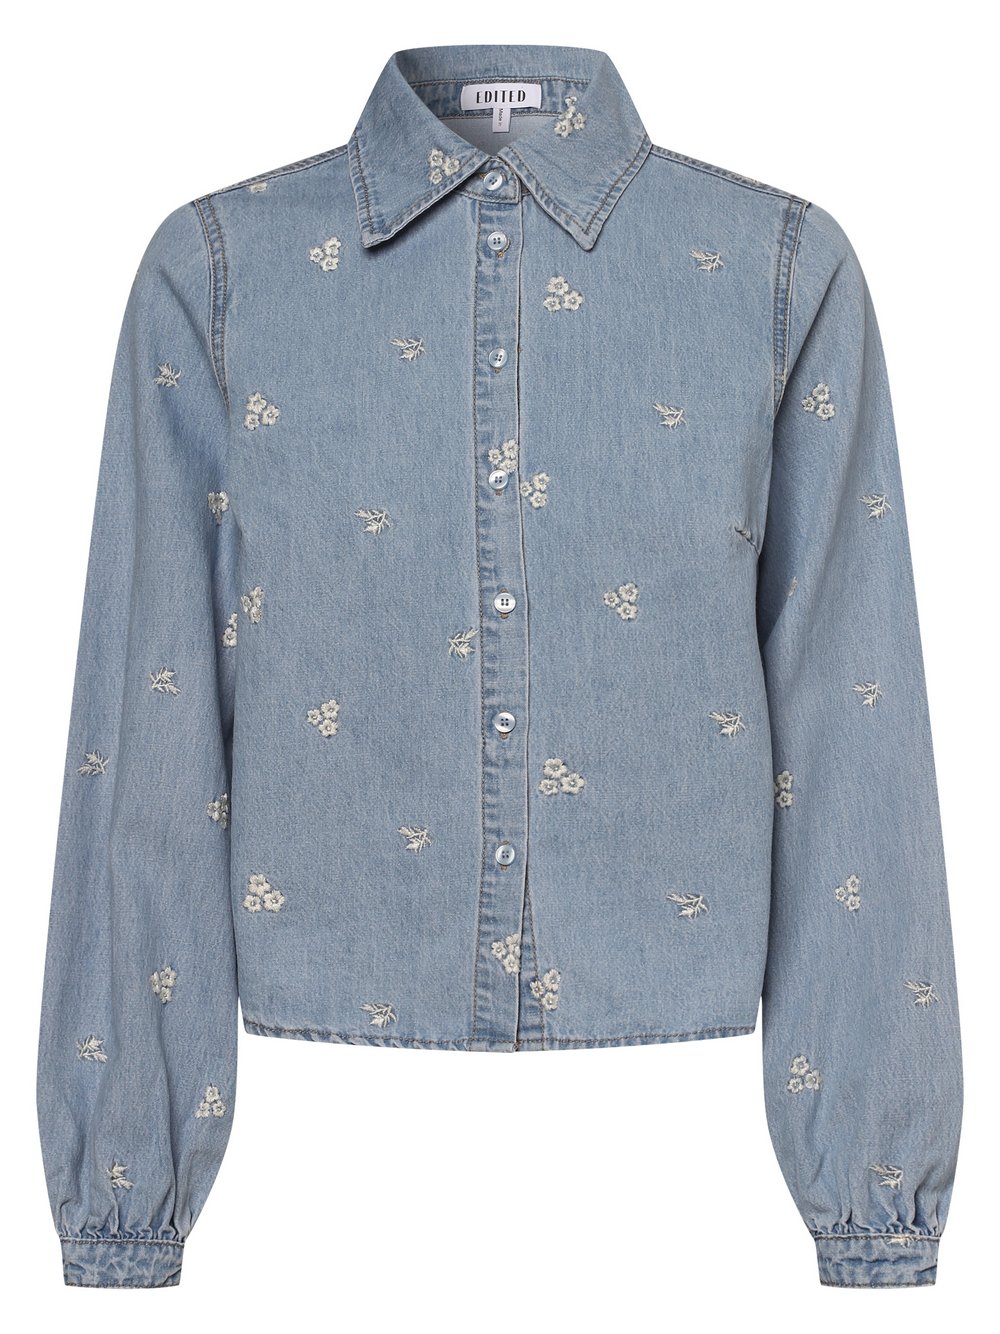 EDITED - Damska koszula jeansowa – Jolin, niebieski